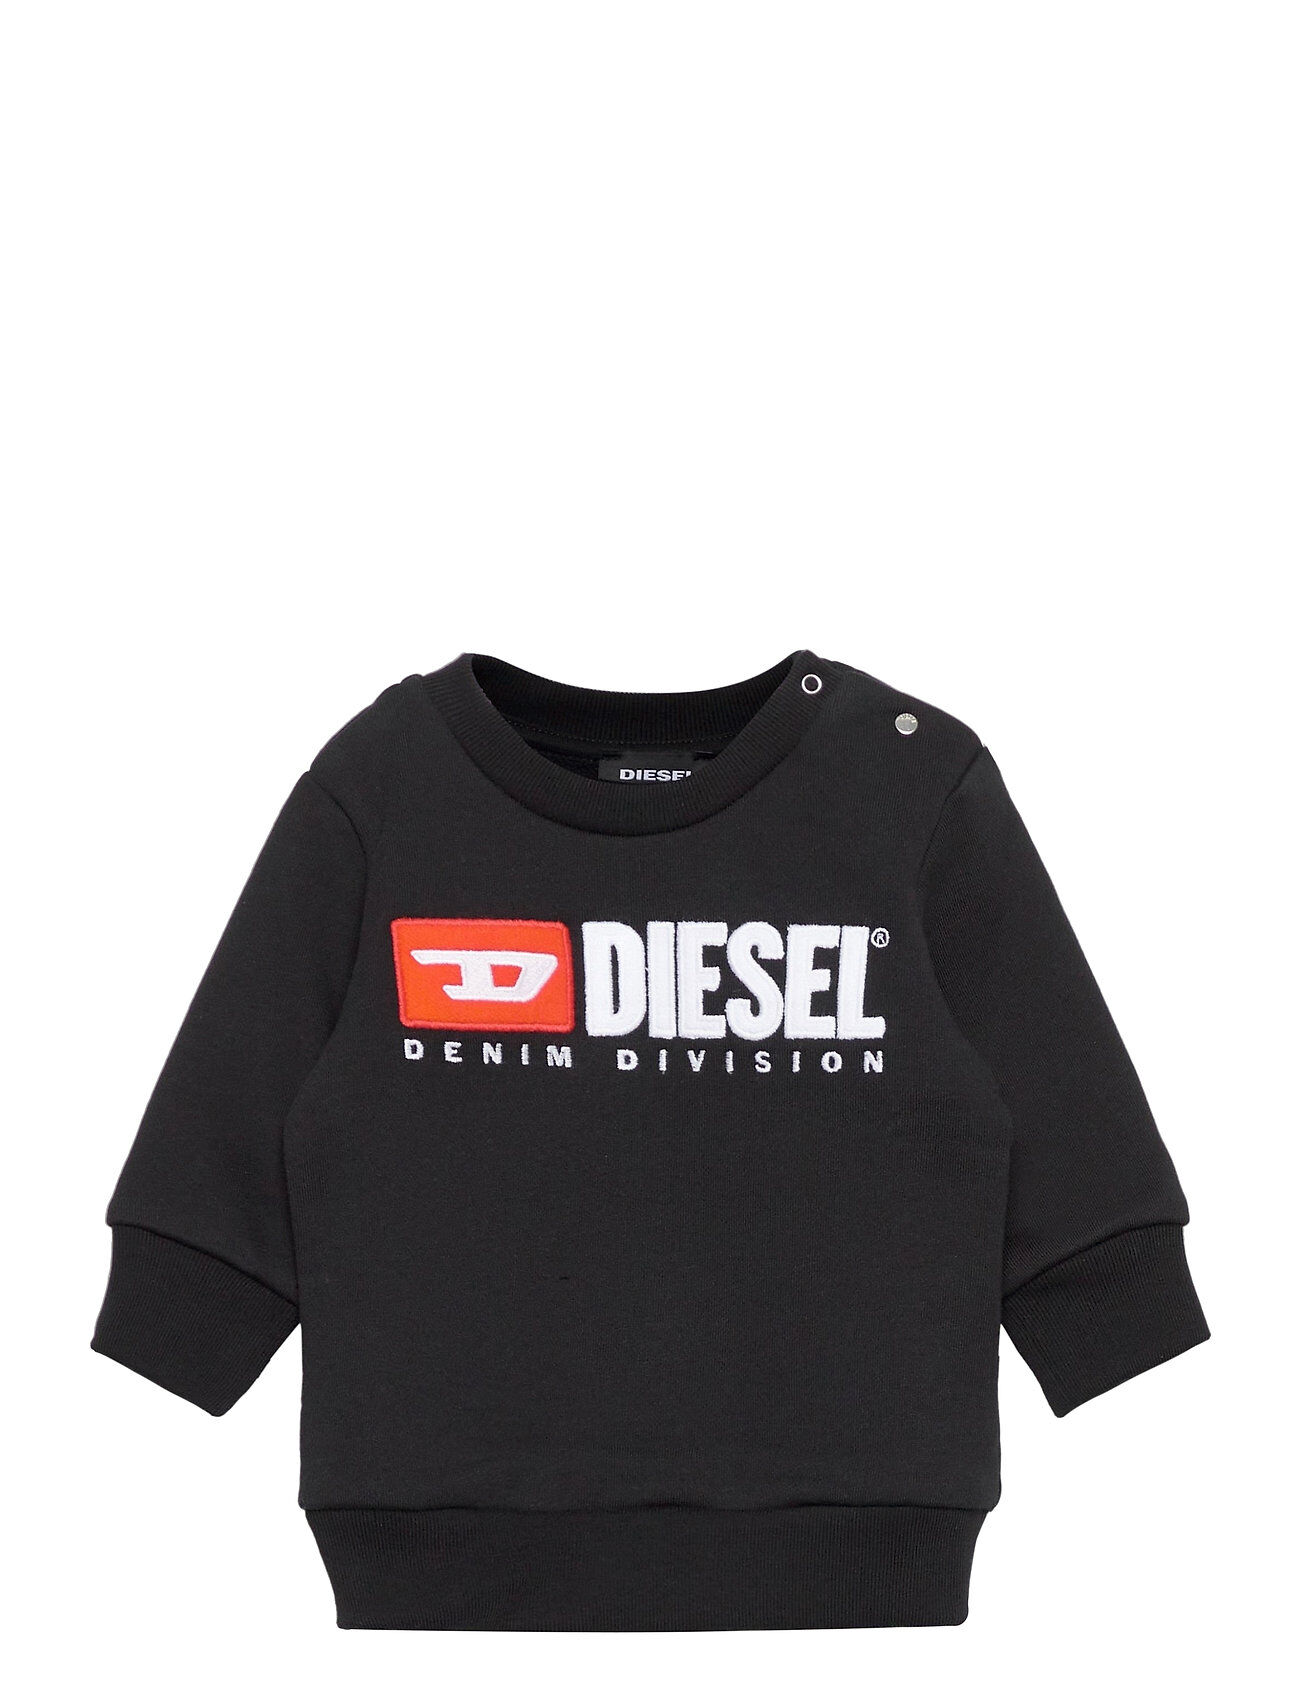 Diesel Screwdivisionb Sweat-Shirt Sweat-shirt Genser Svart Diesel